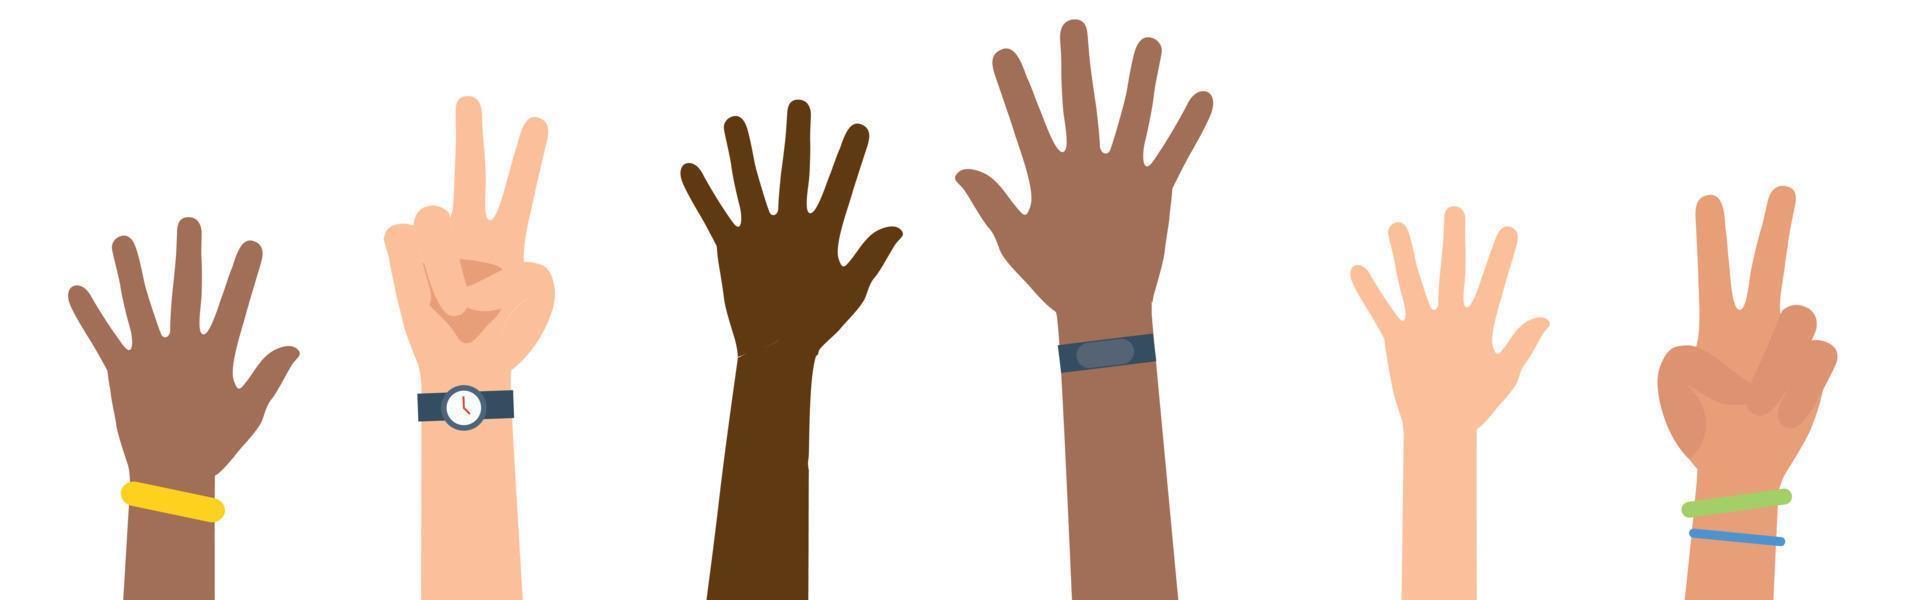 multi-etnische en diverse handen opgewekt geïsoleerd op een witte achtergrond. vector illustratie